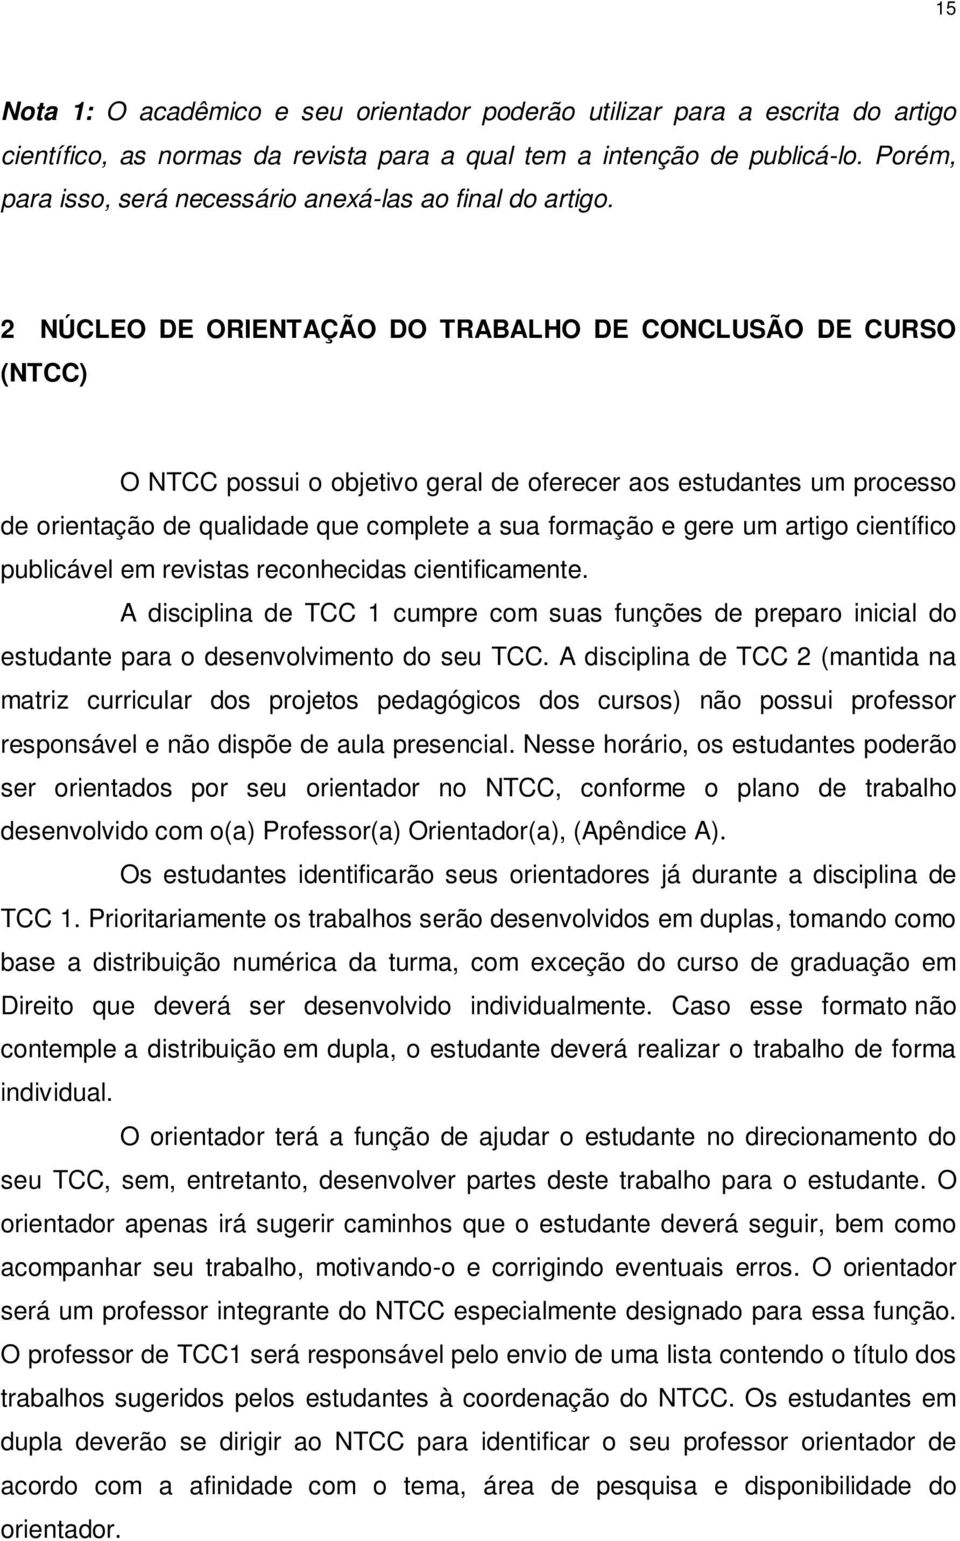 2 NÚCLEO DE ORIENTAÇÃO DO TRABALHO DE CONCLUSÃO DE CURSO (NTCC) O NTCC possui o objetivo geral de oferecer aos estudantes um processo de orientação de qualidade que complete a sua formação e gere um